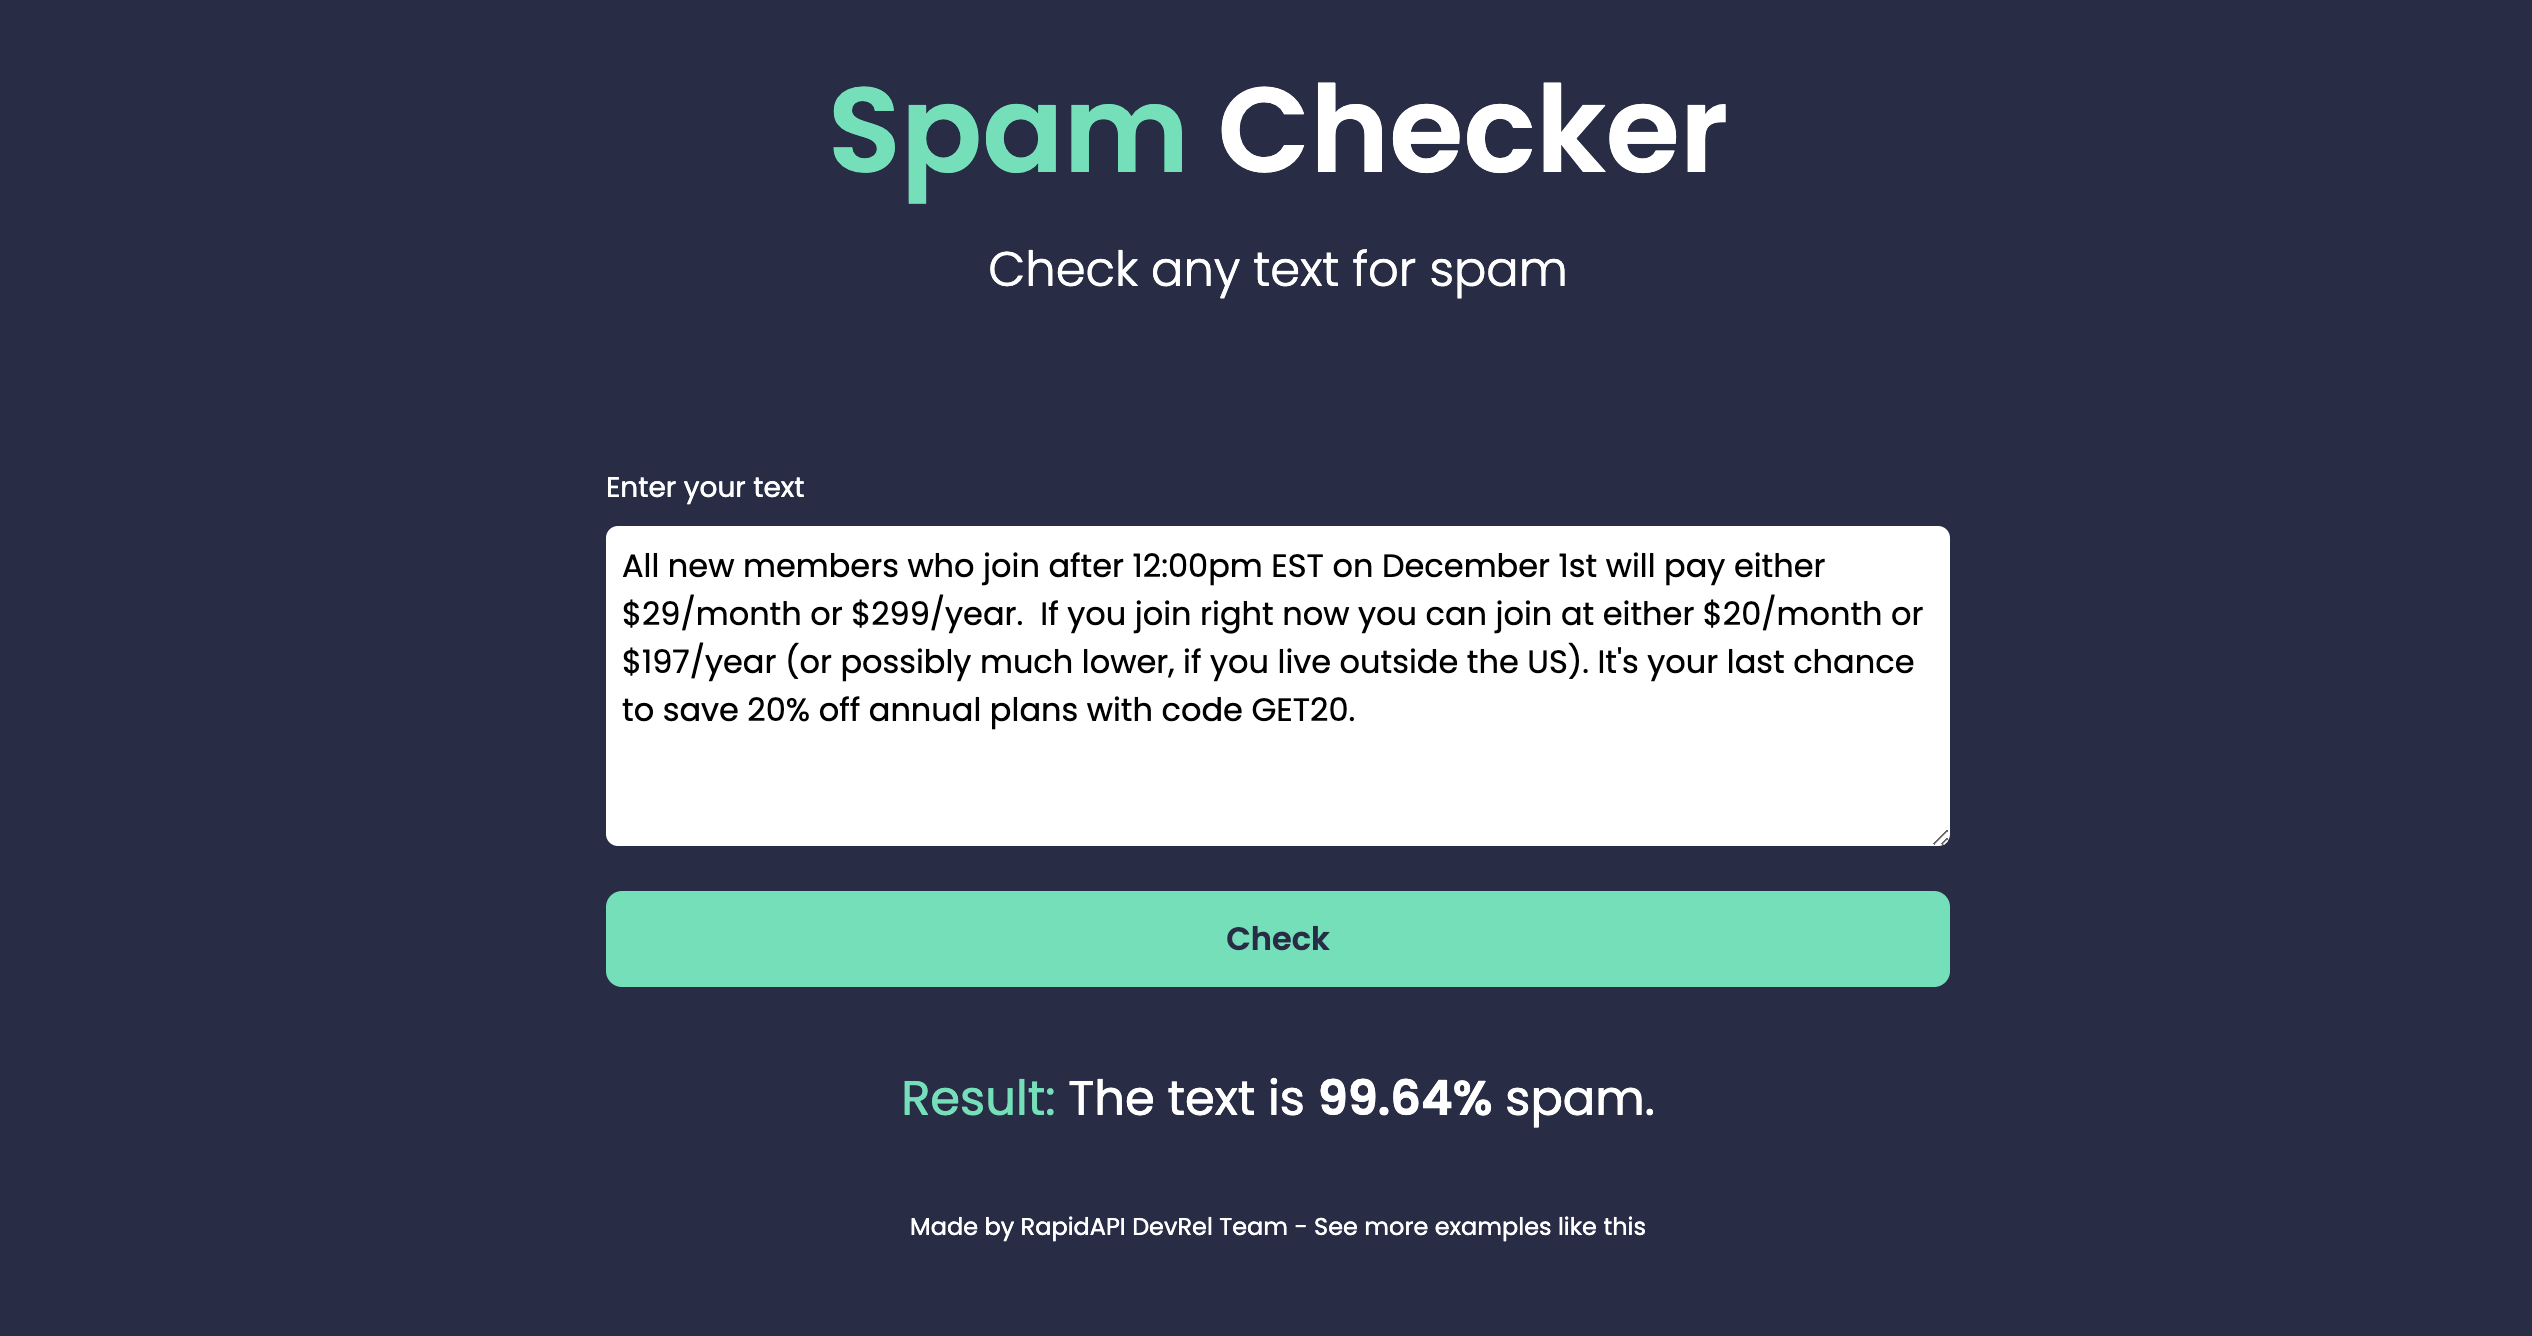 Spam Checker built using Spam Check API